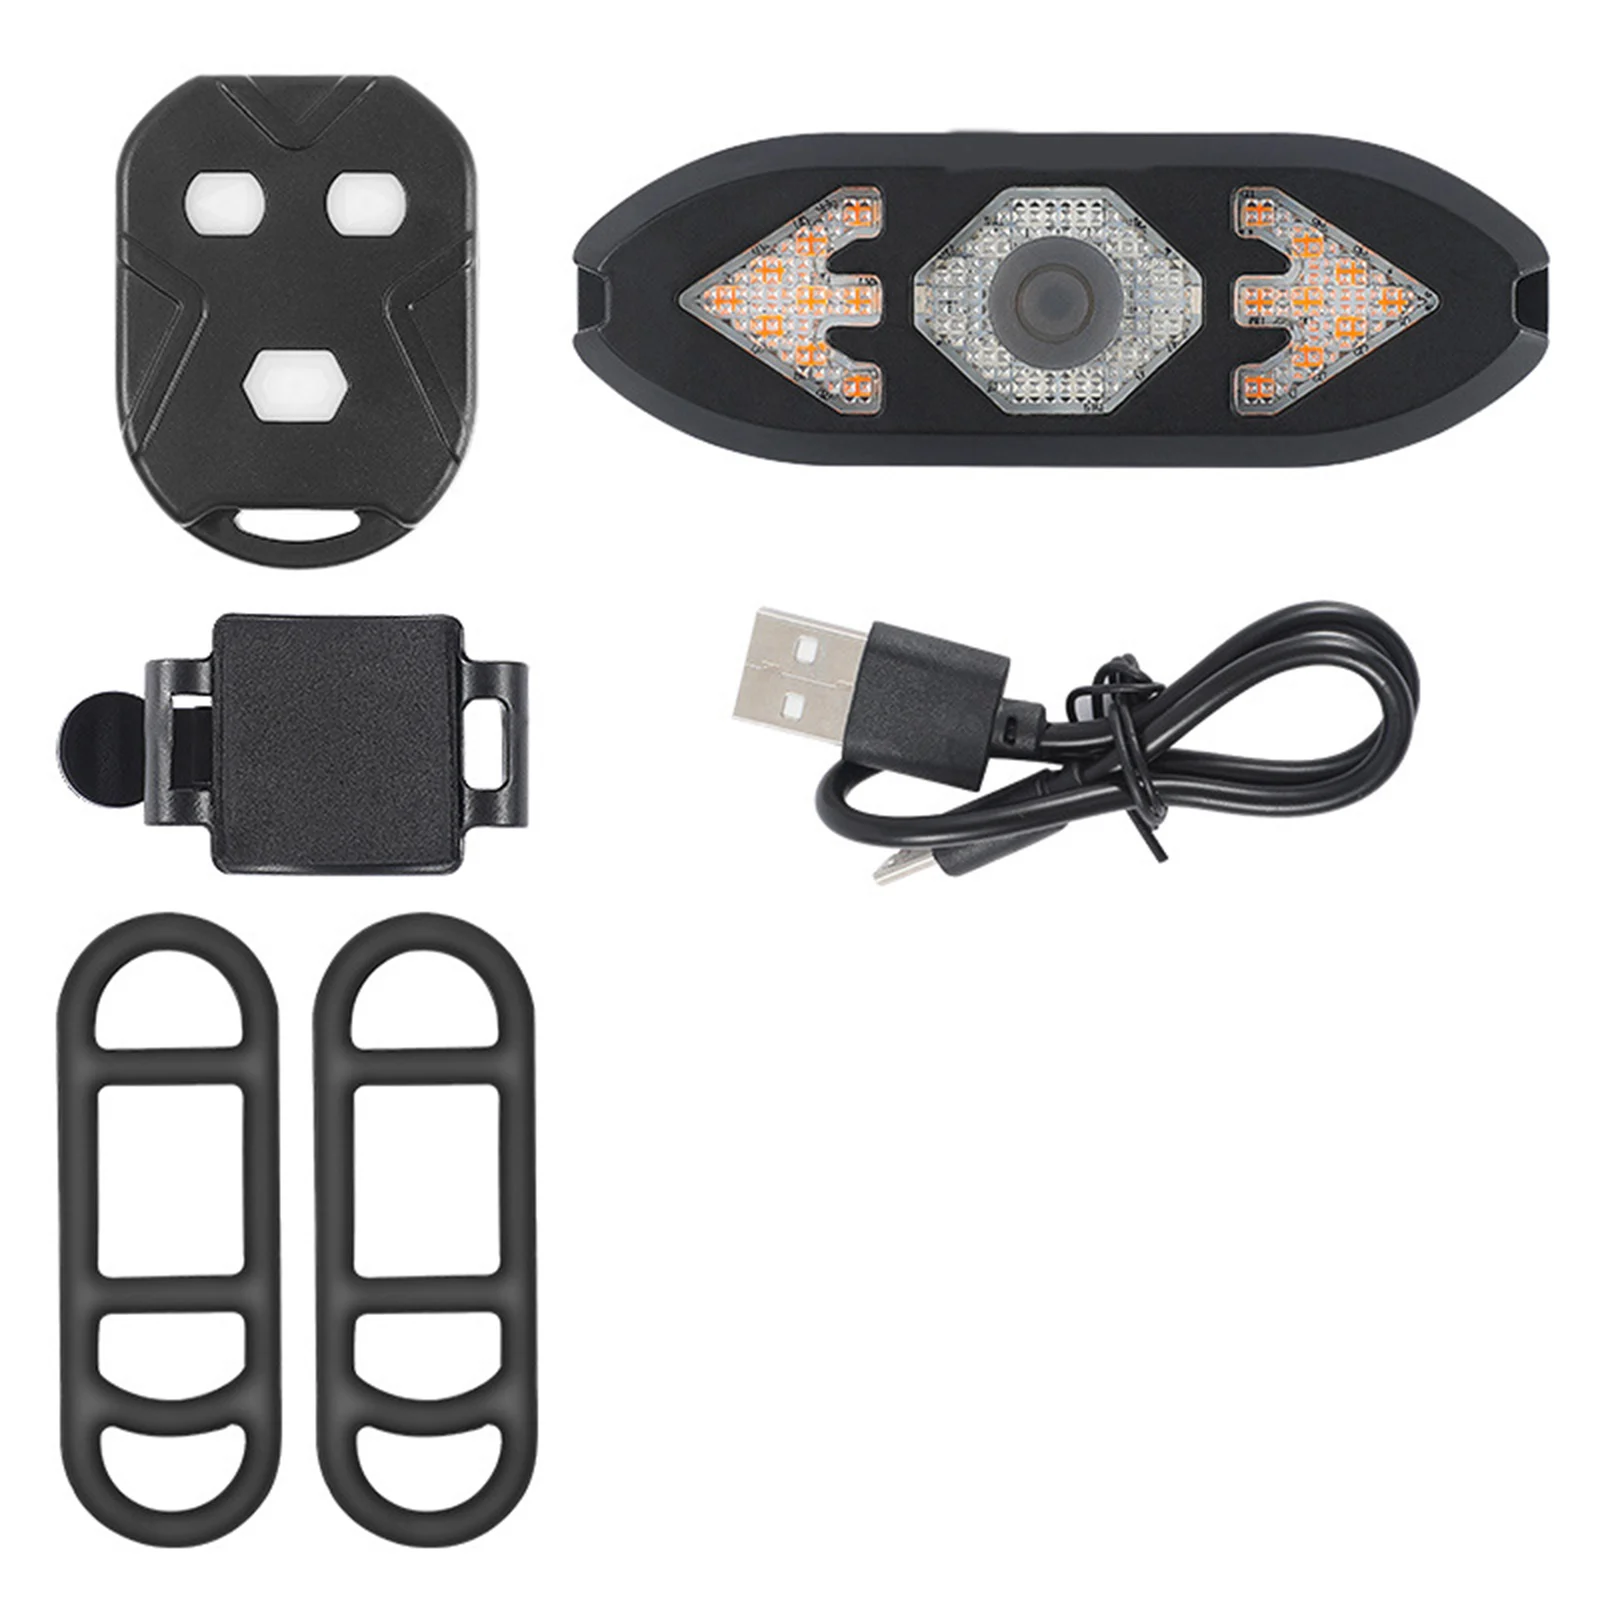 

Задний фонарь для велосипеда с указателями поворота, перезаряжаемый от USB ультра яркий светодиодный Предупреждение о безопасности, задний ...